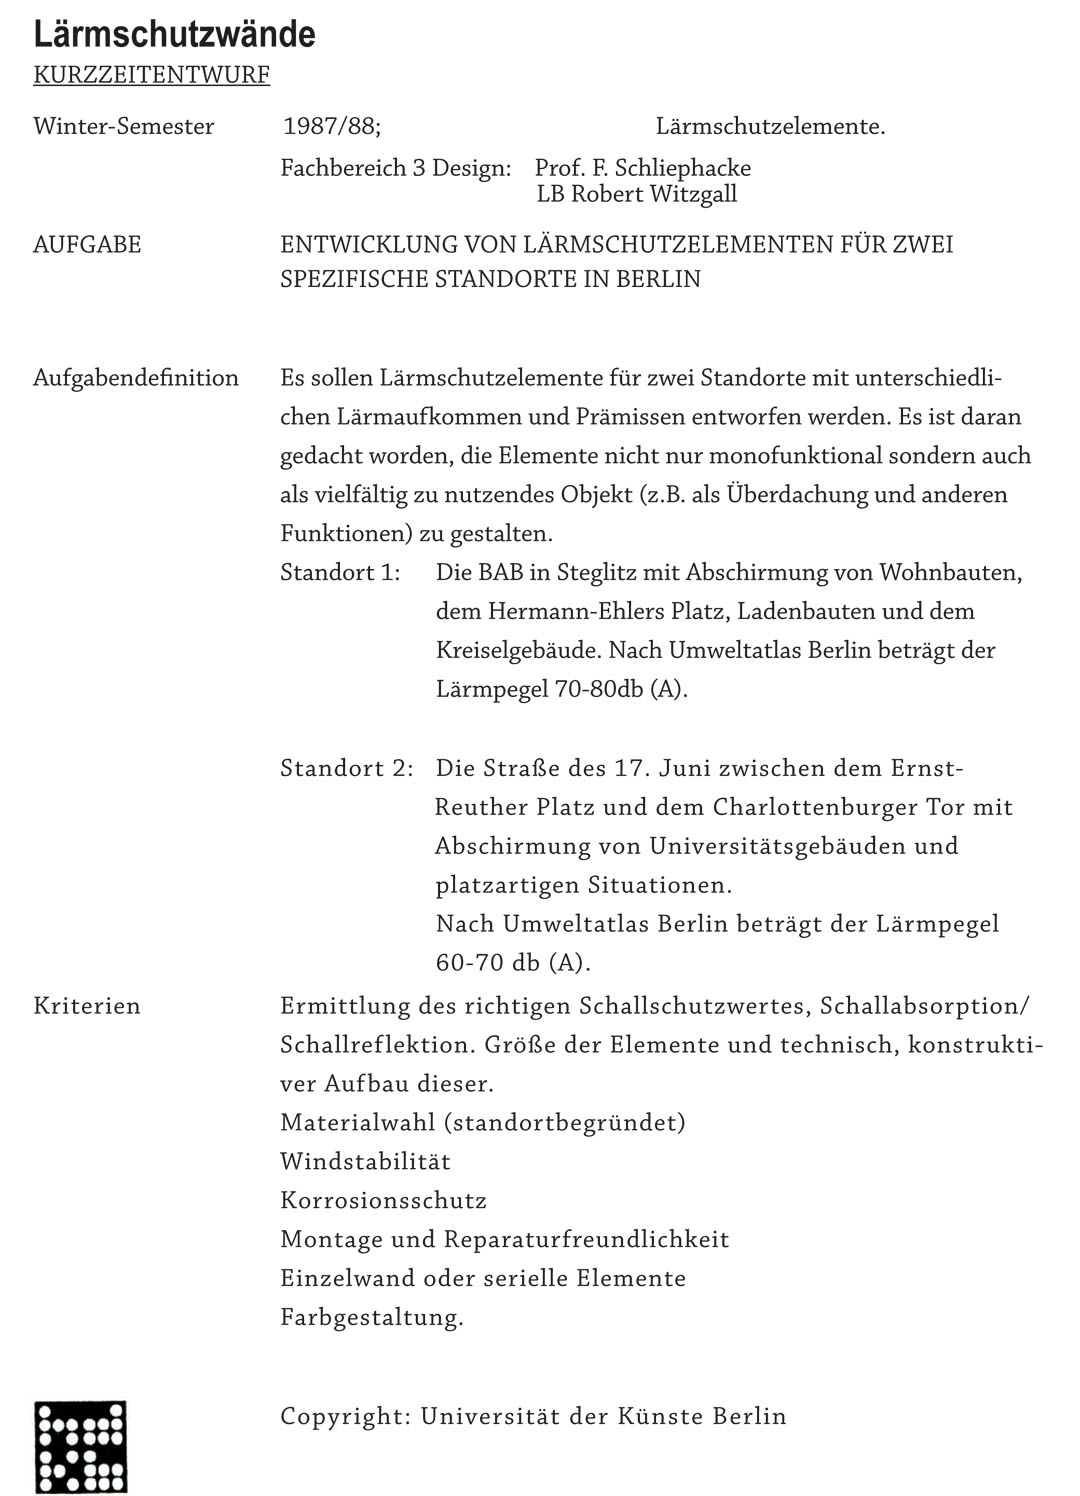 Lehrauftrag_laermschutz_text